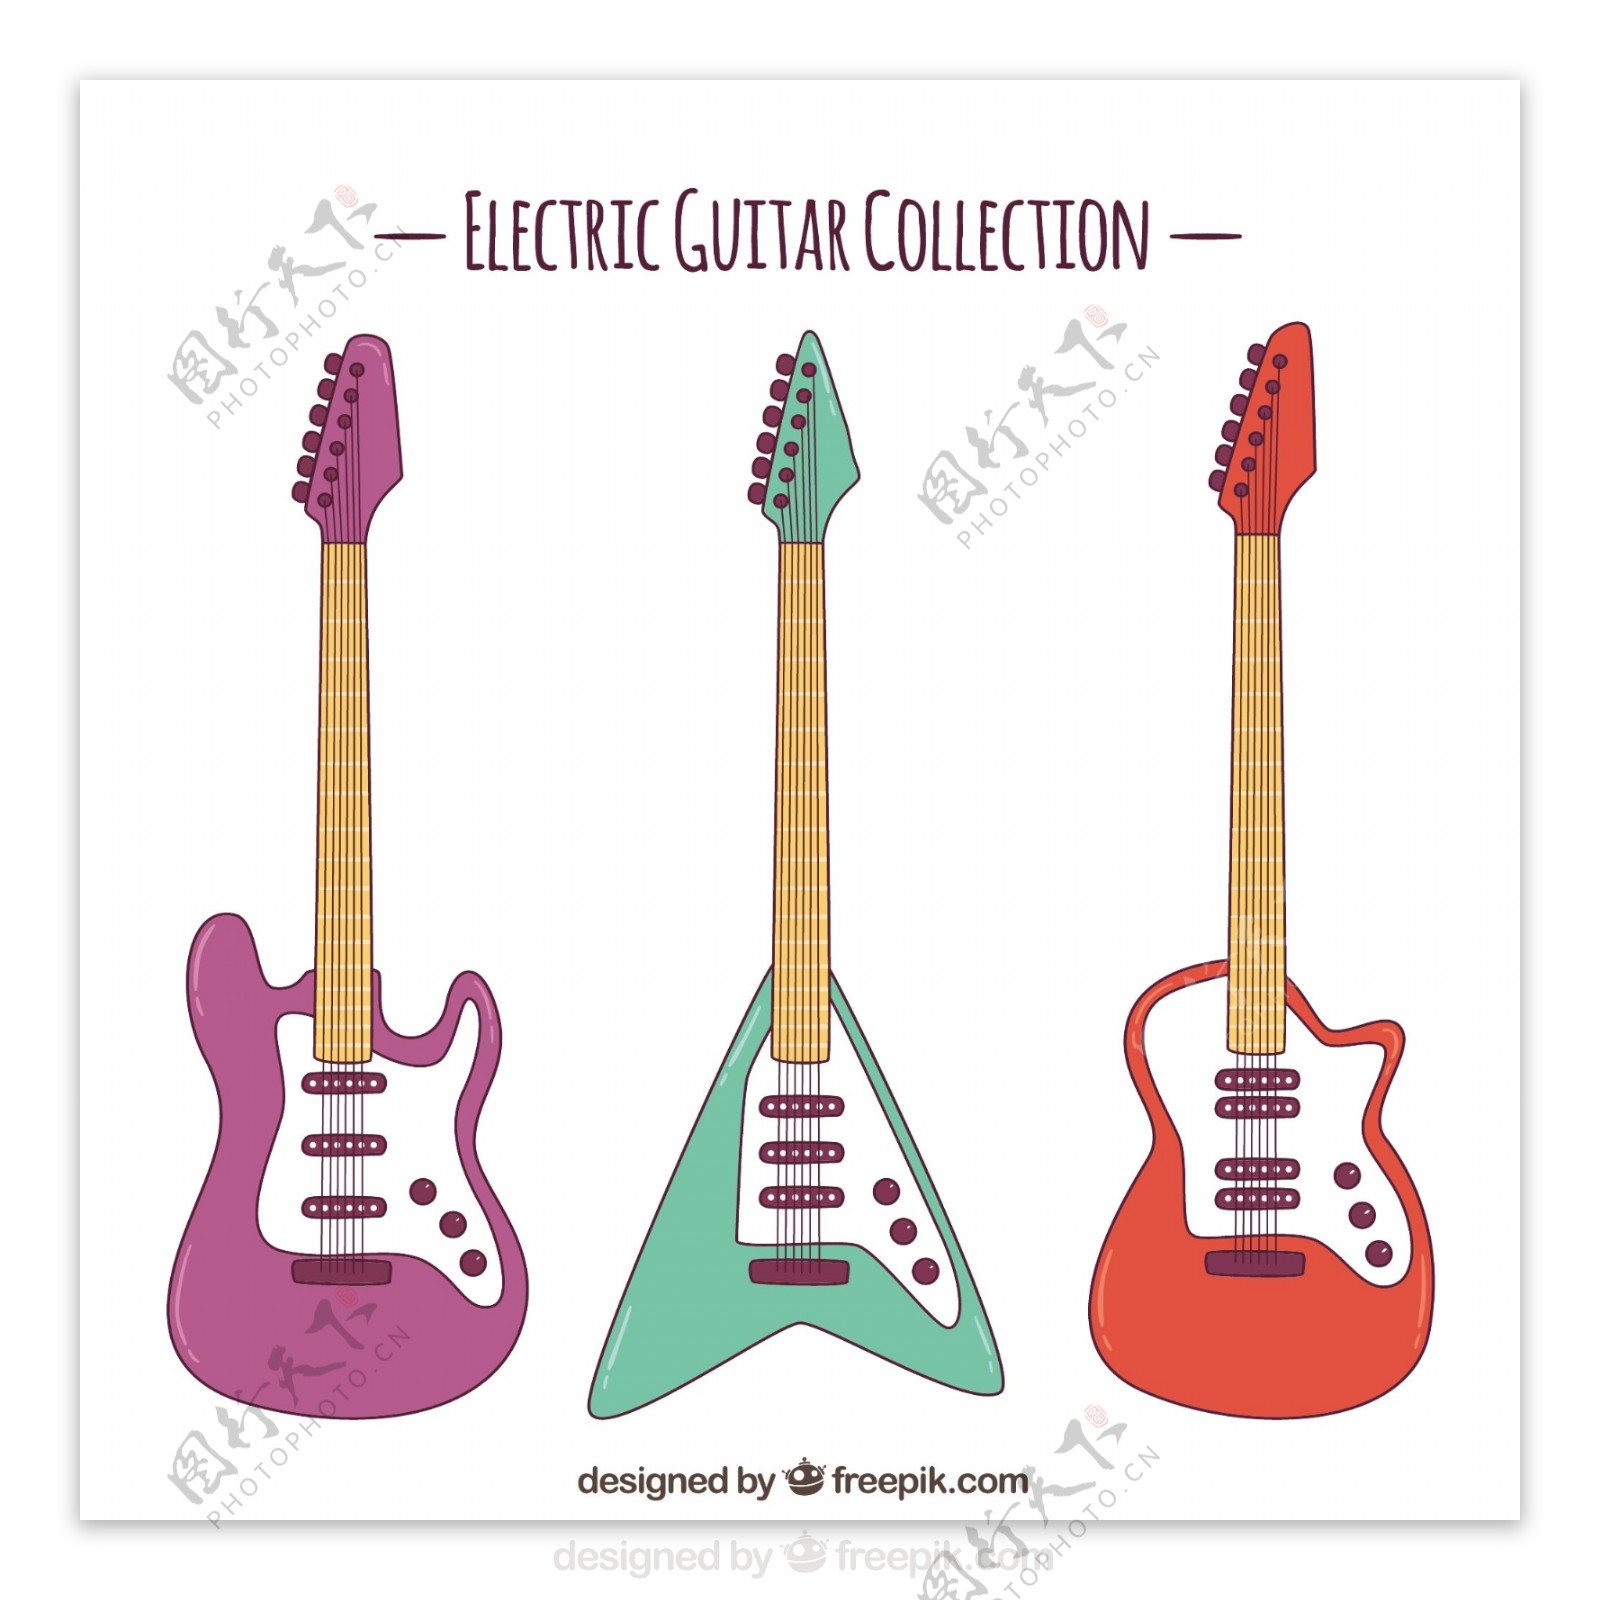 三支彩色电吉他